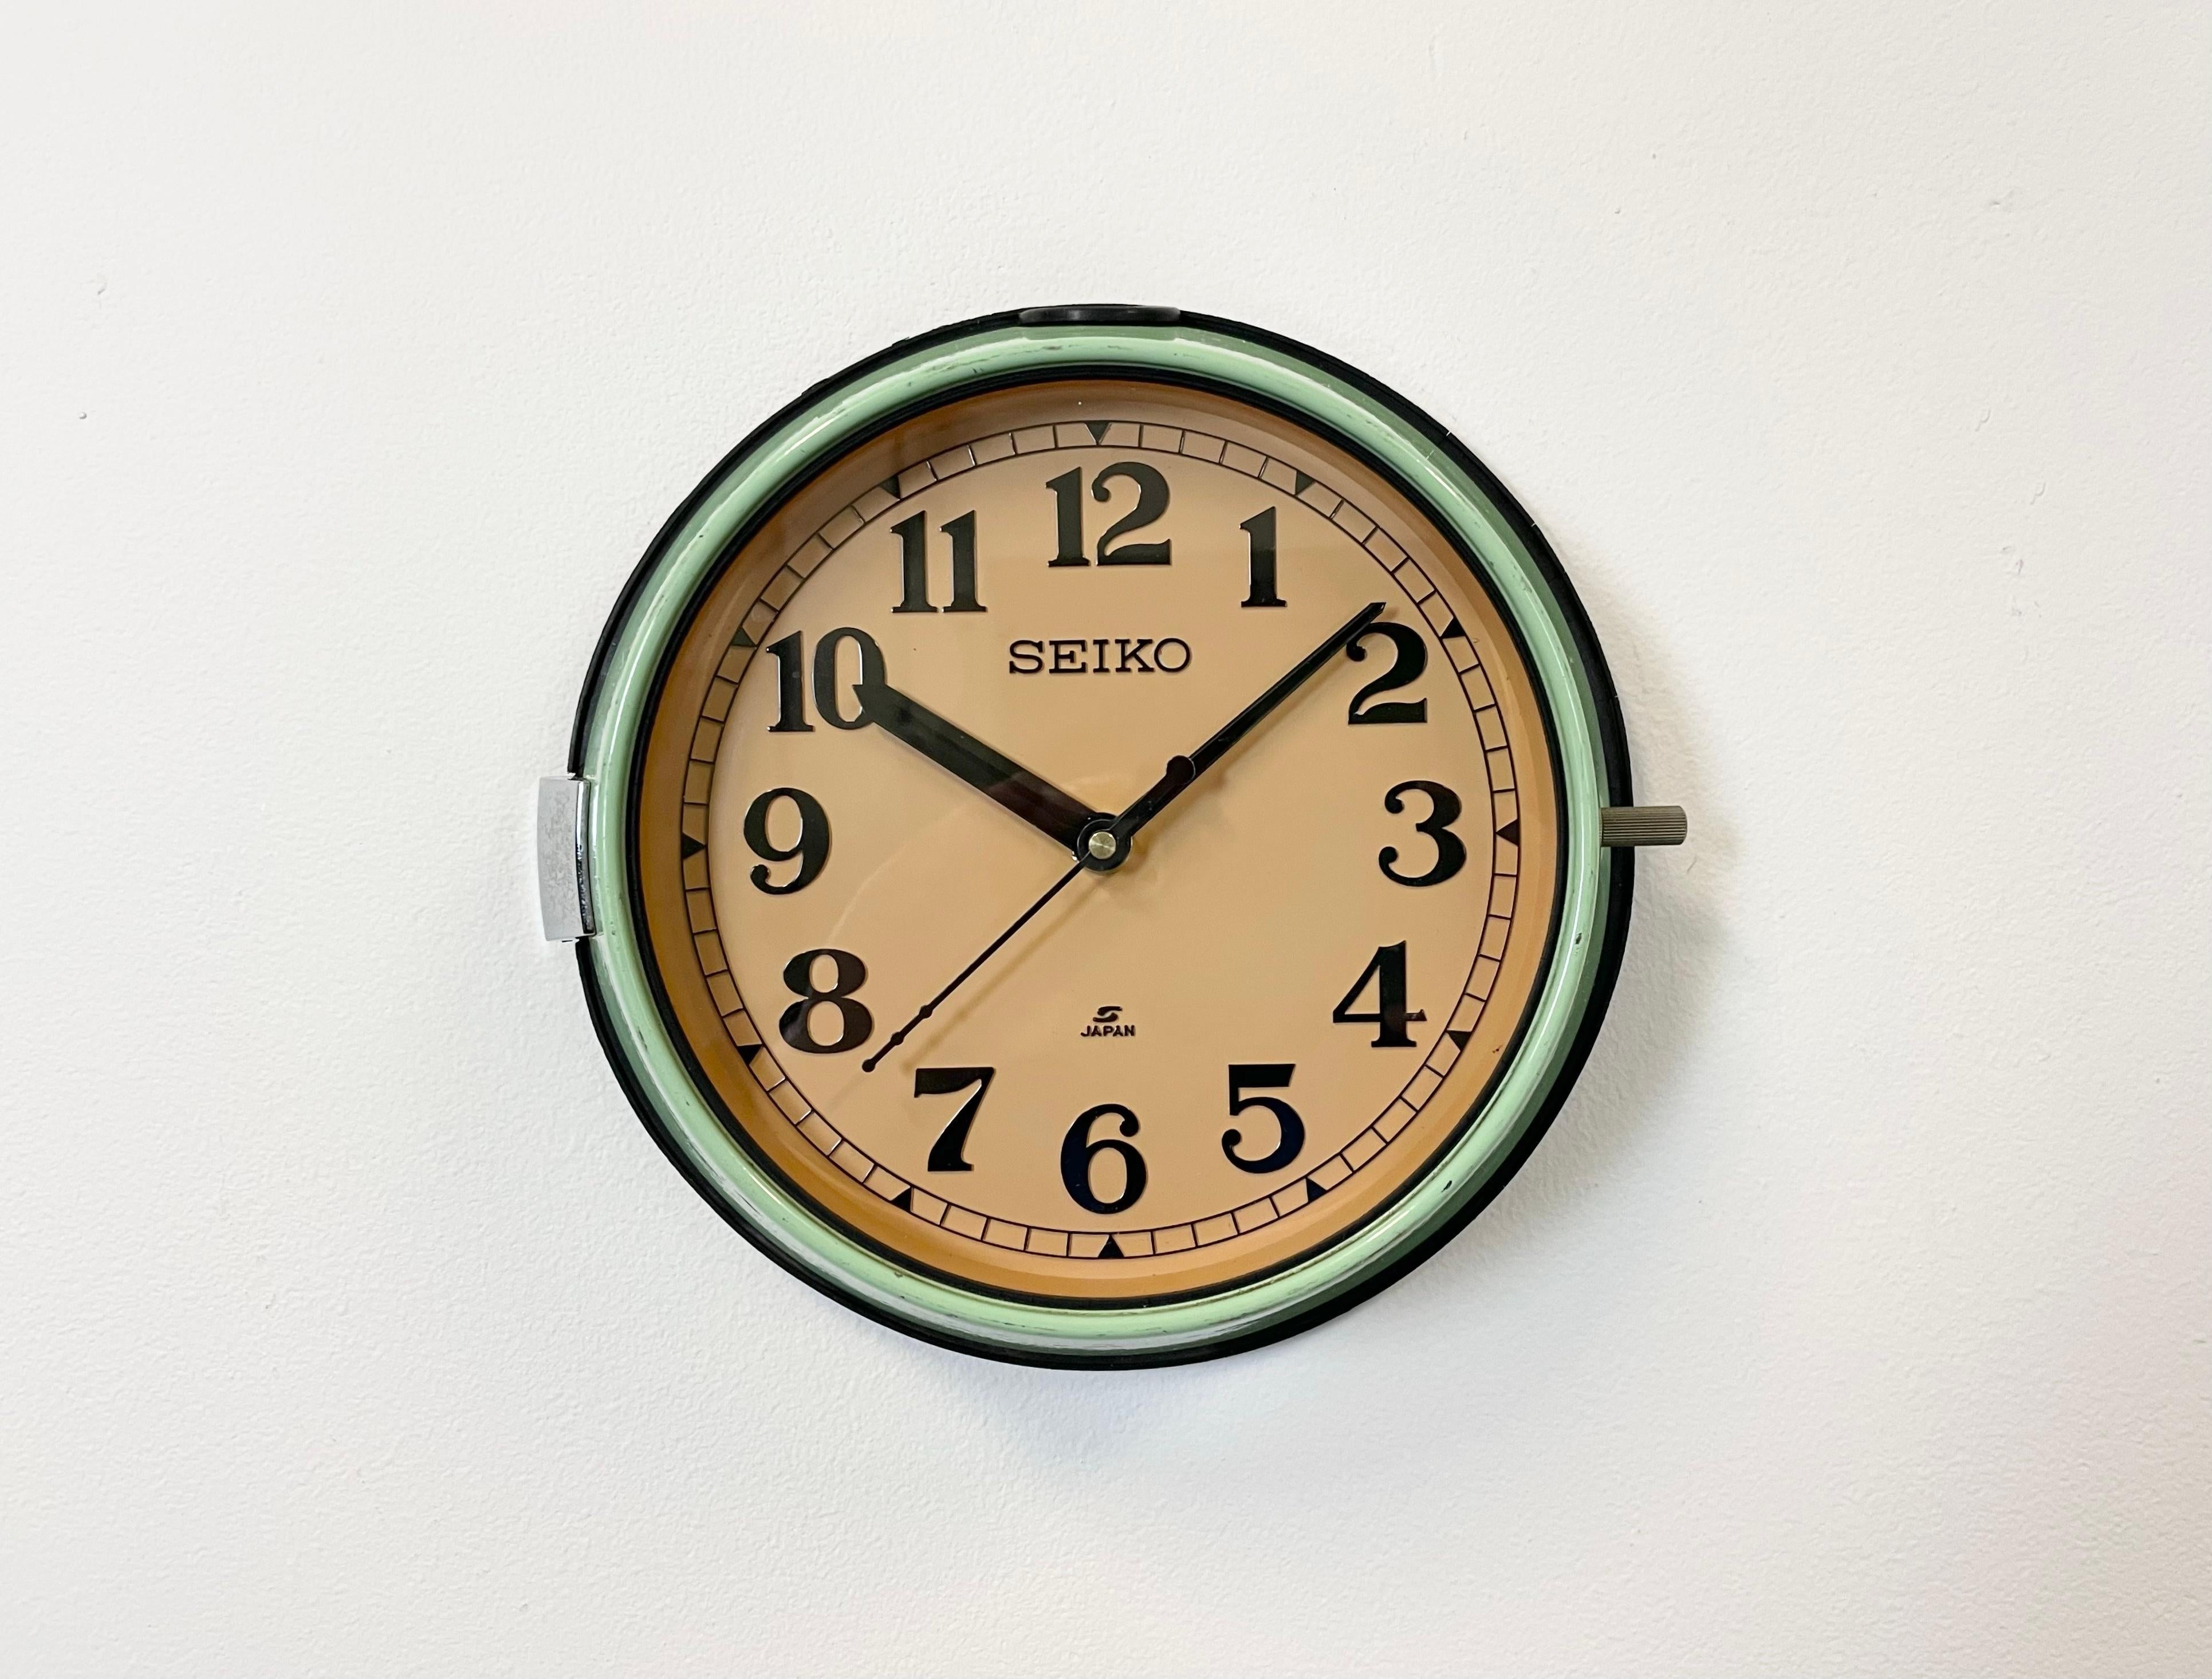 Vintage Seiko navy slave clock conçu pendant les années 1970 et produit jusqu'aux années 1990. Ces horloges étaient utilisées sur les grands pétroliers et cargos japonais. Il comporte un cadre métallique vert, un cadran en plastique et un couvercle